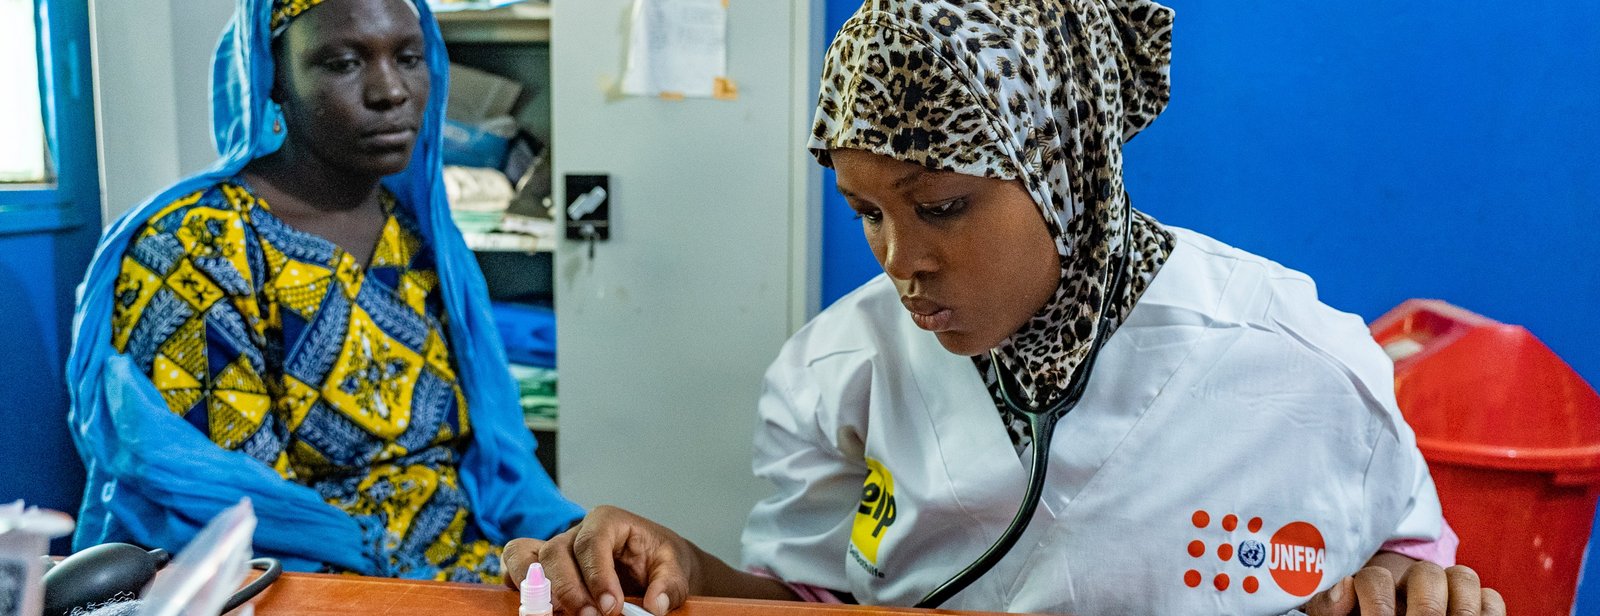 Ärztin in Mali untersucht eine Frau